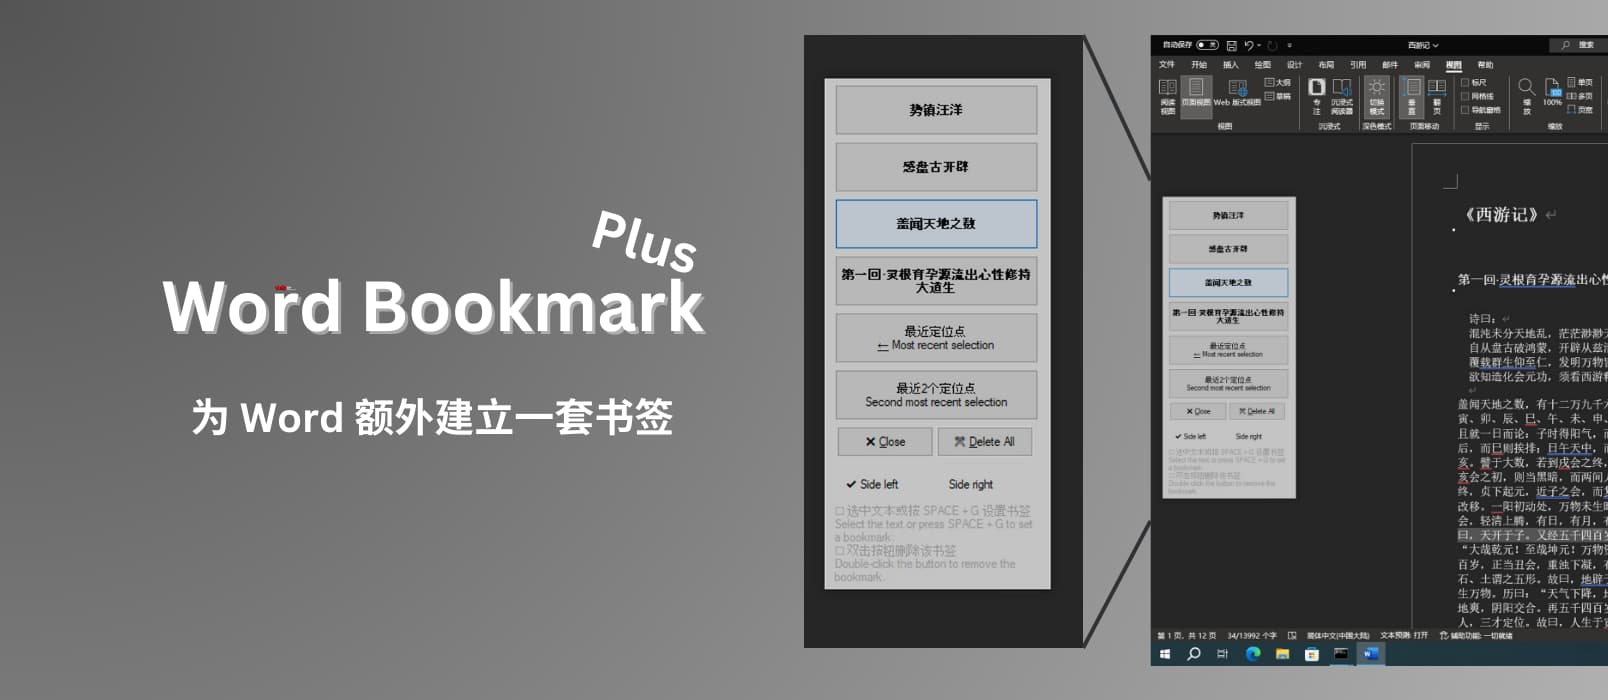 Word Bookmark Plus - 为 Word 额外建立书签，在文档内快速跳转[Windows] 8